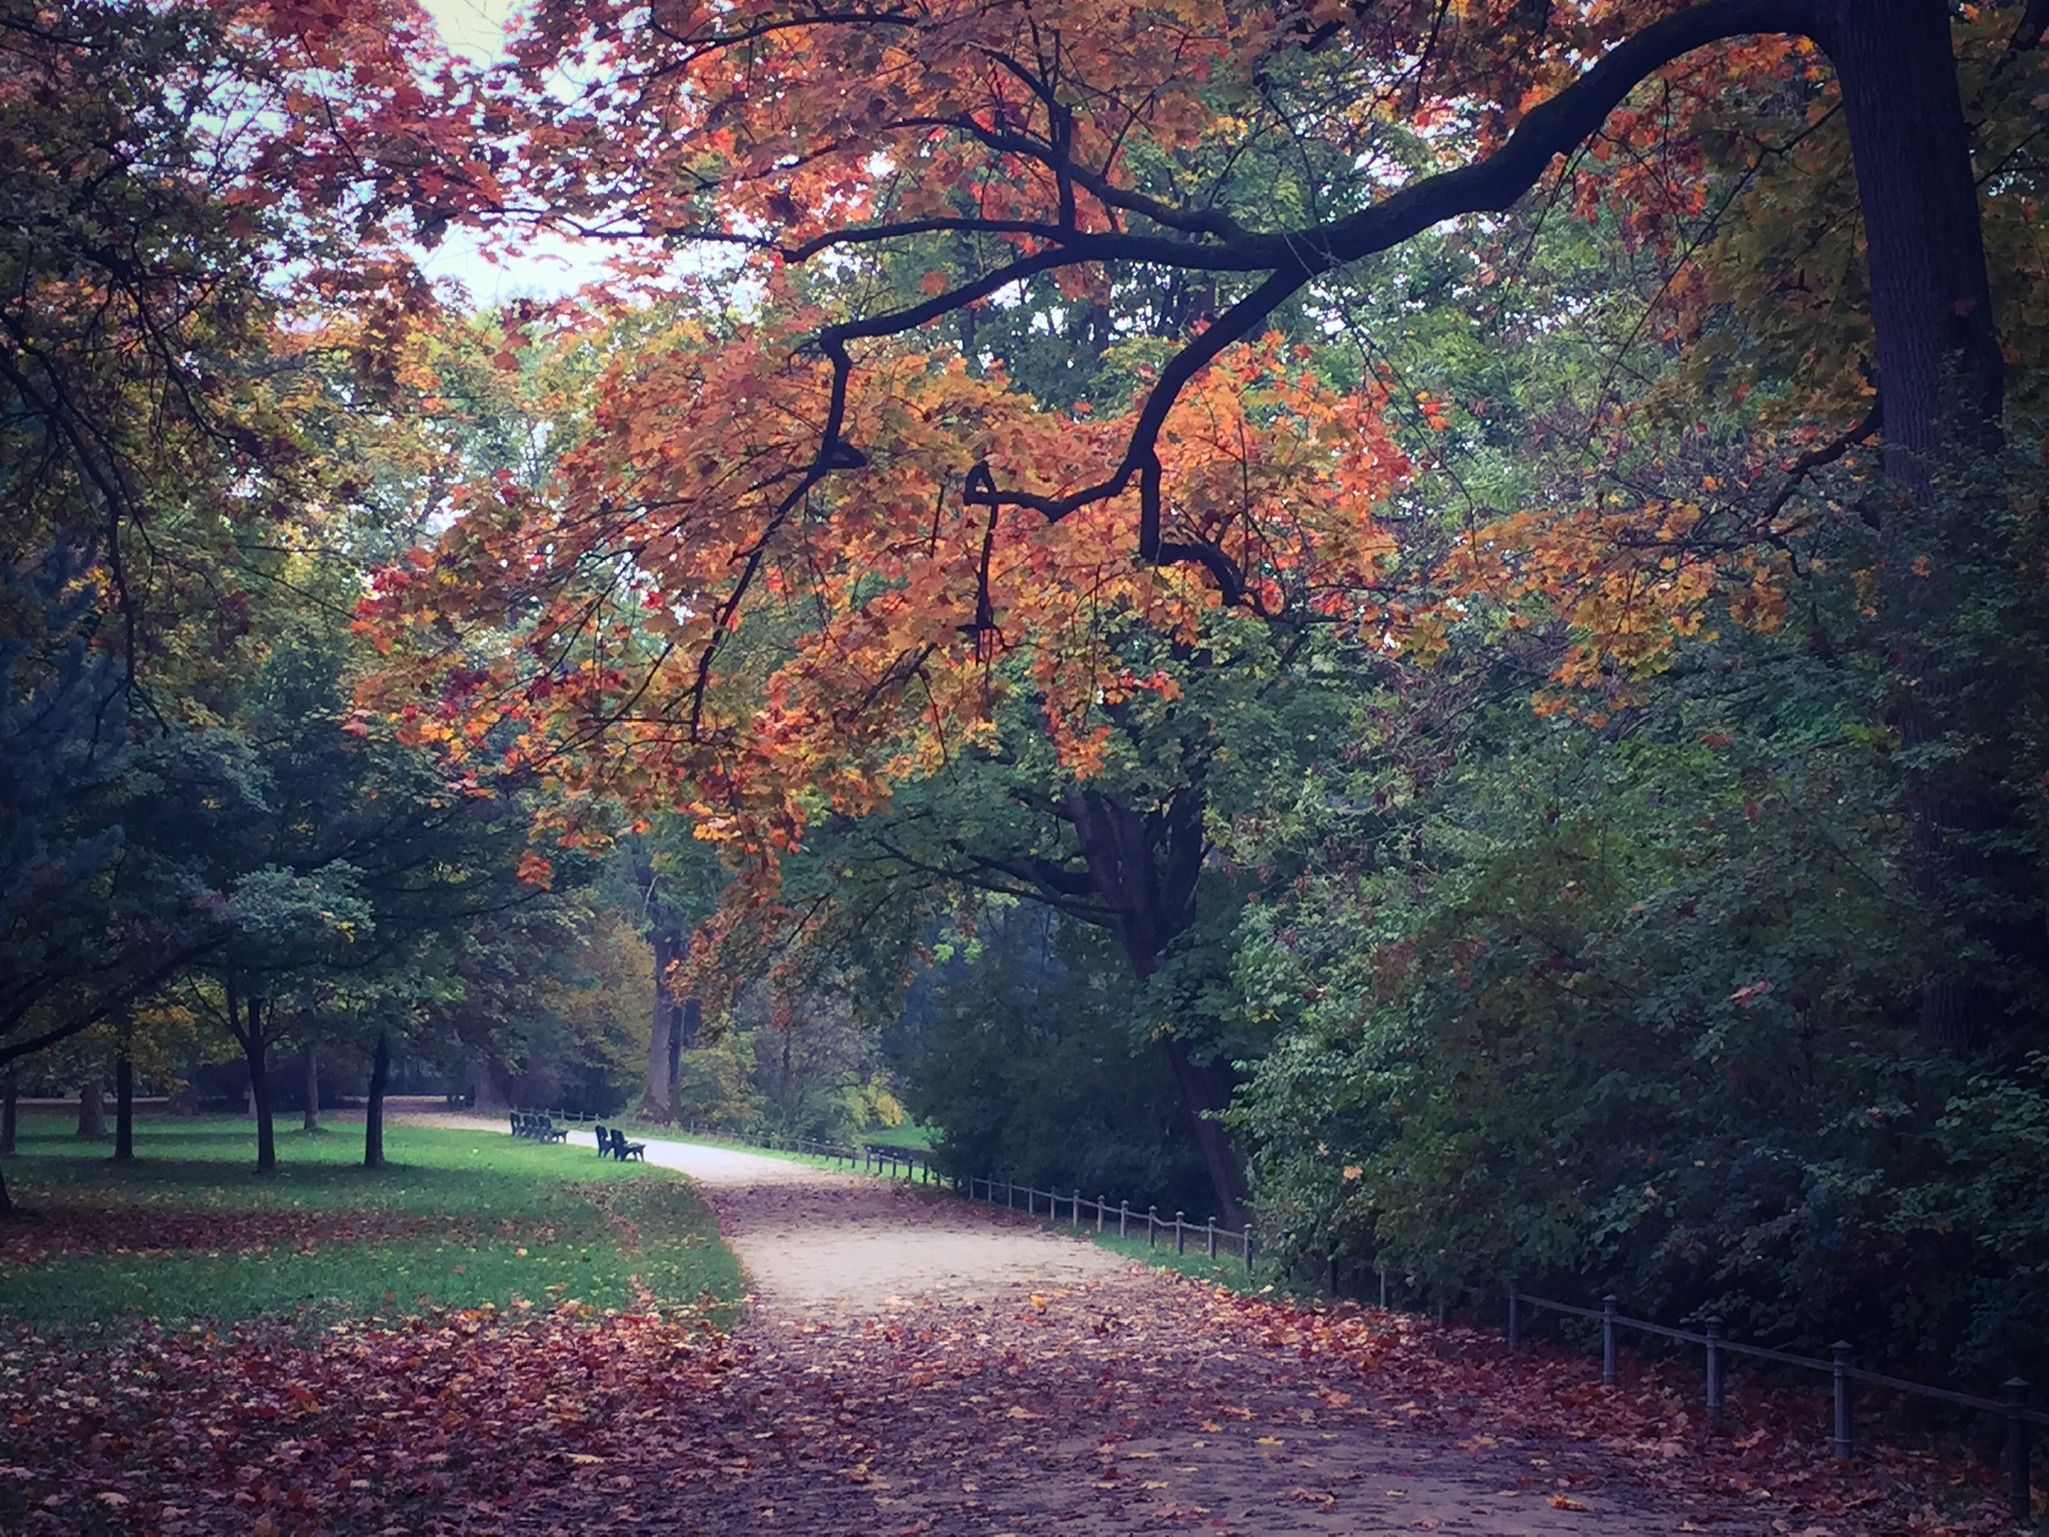 Autumn in the Englisher Garten